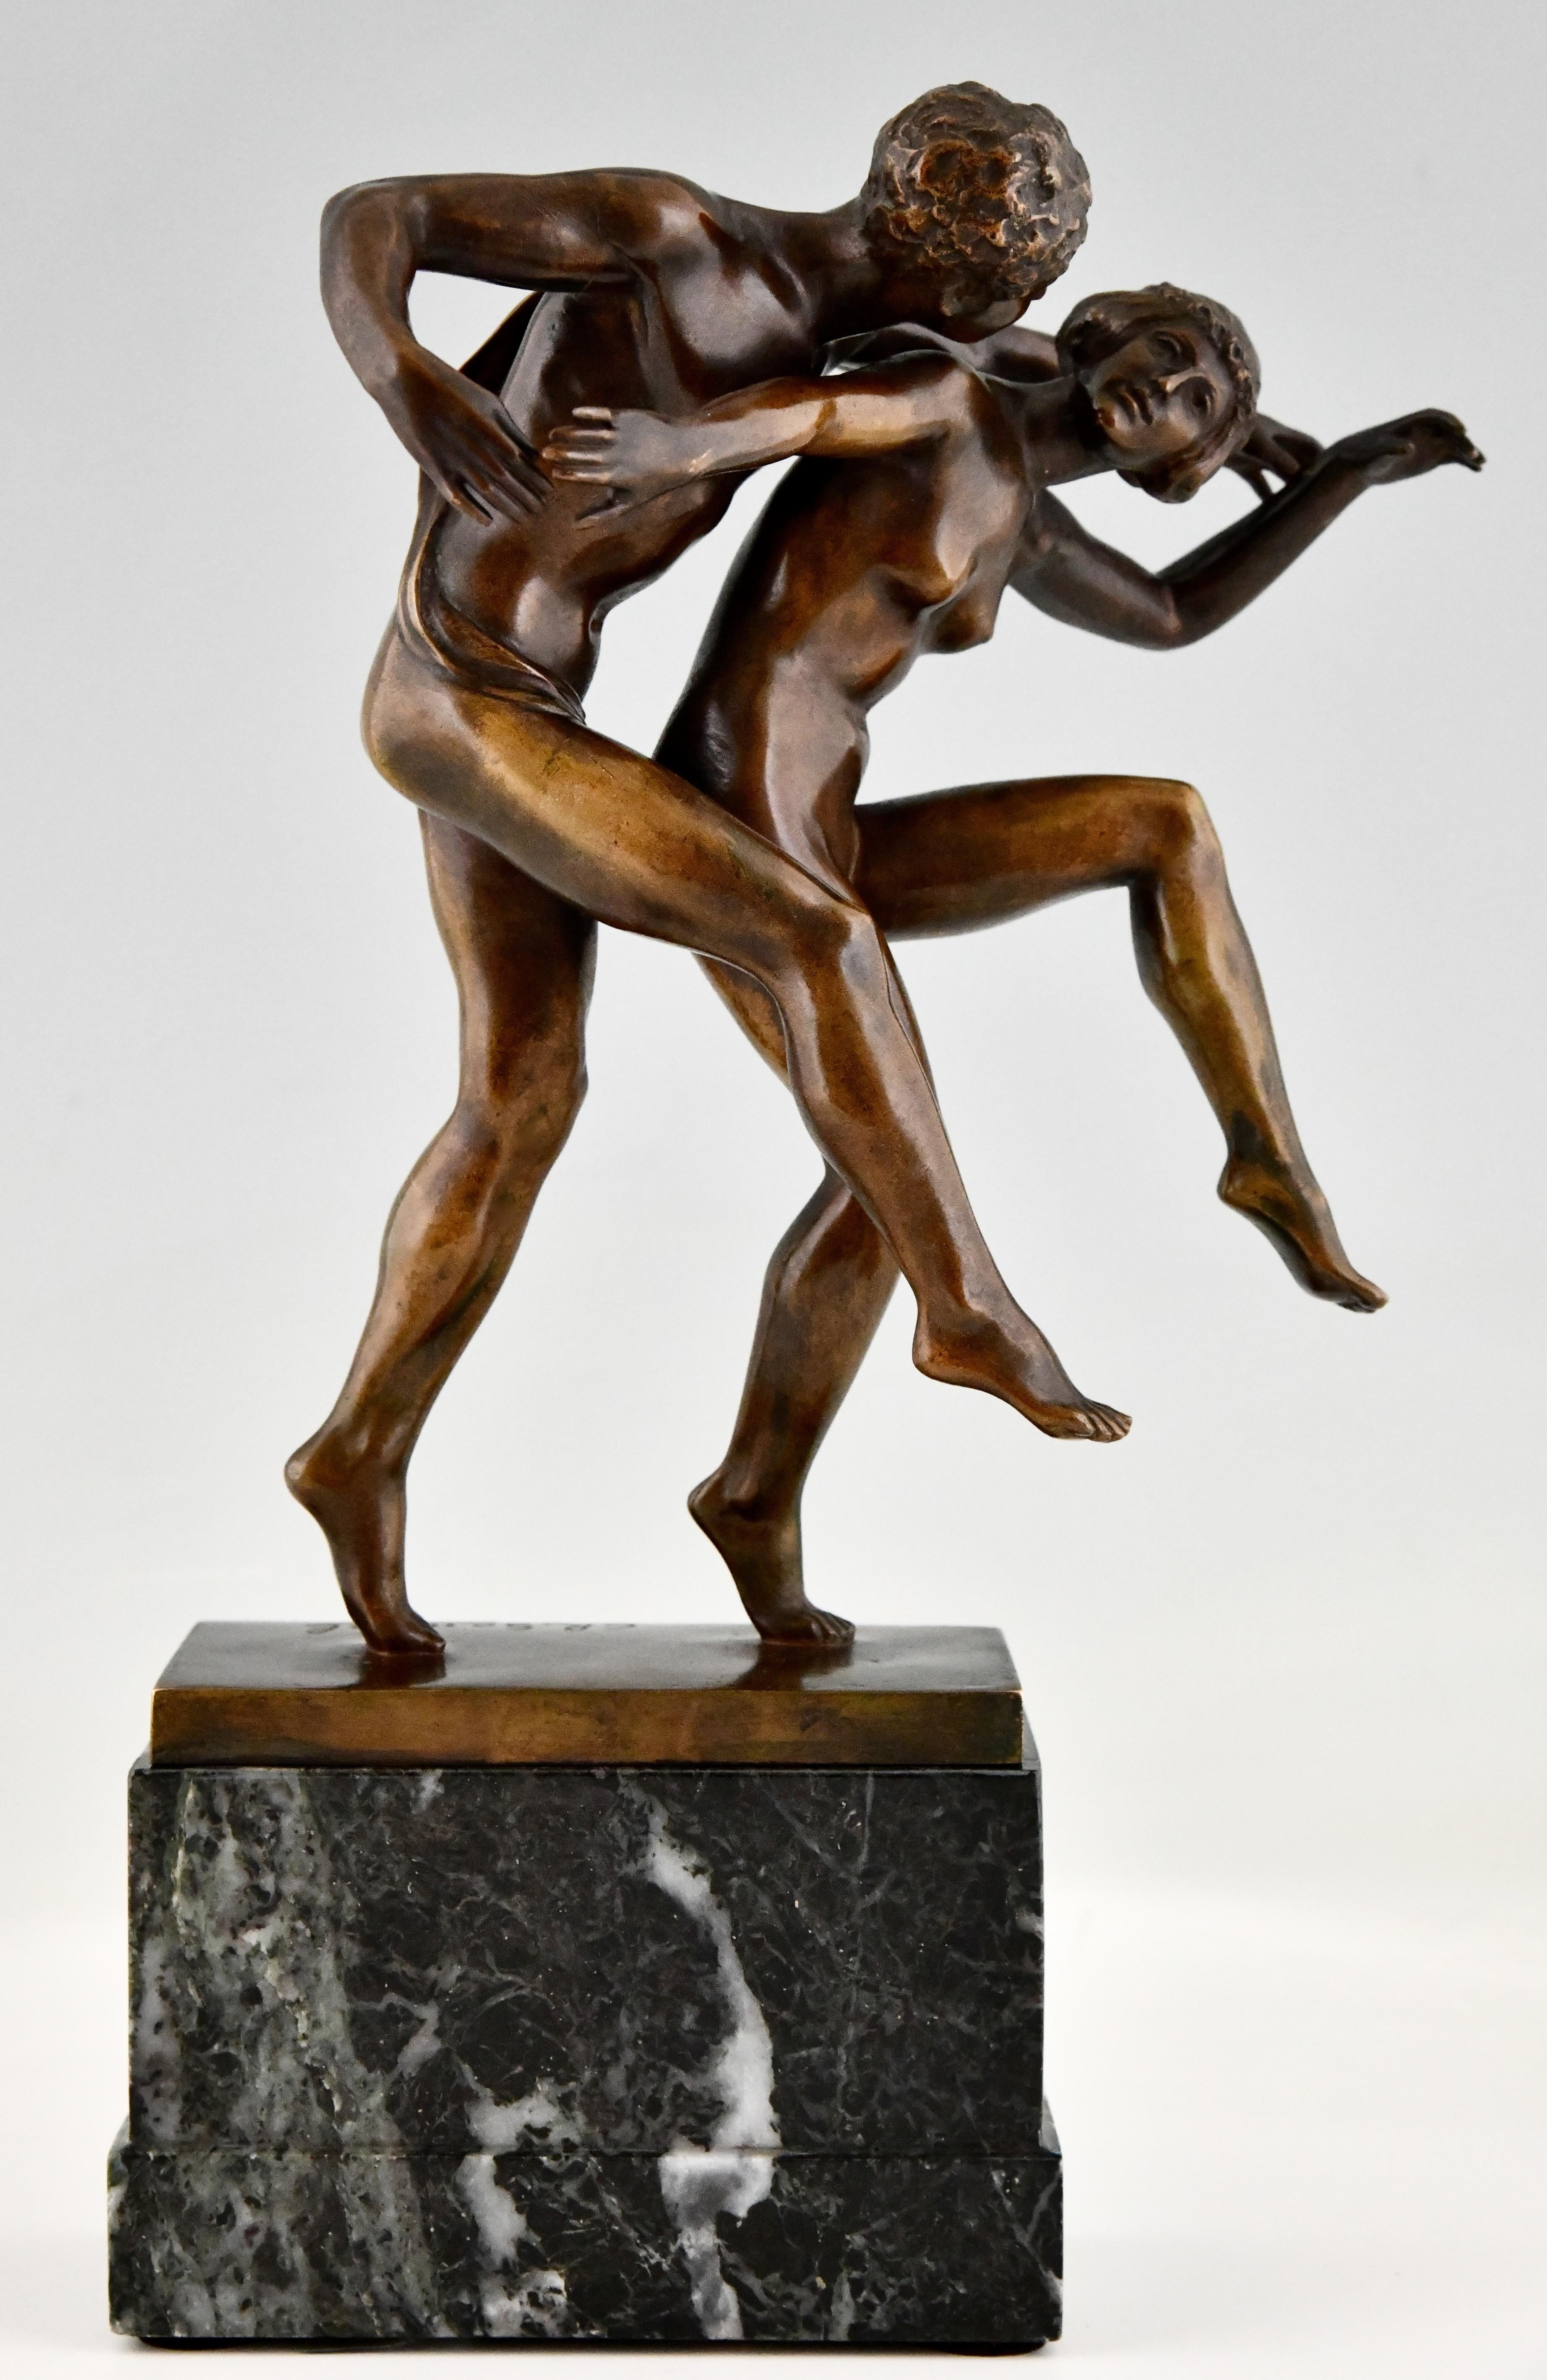 Jugendstil-Bronzeskulptur tanzendes nacktes Paar, La Danse von Charles Samuel. 
Patinierte Bronze auf einem Marmorsockel. 
Belgien um 1900. 
Diese Bronze ist abgebildet in:
Beeldhouwkunst in België, Engelen Marx.
Weitere Informationen über den